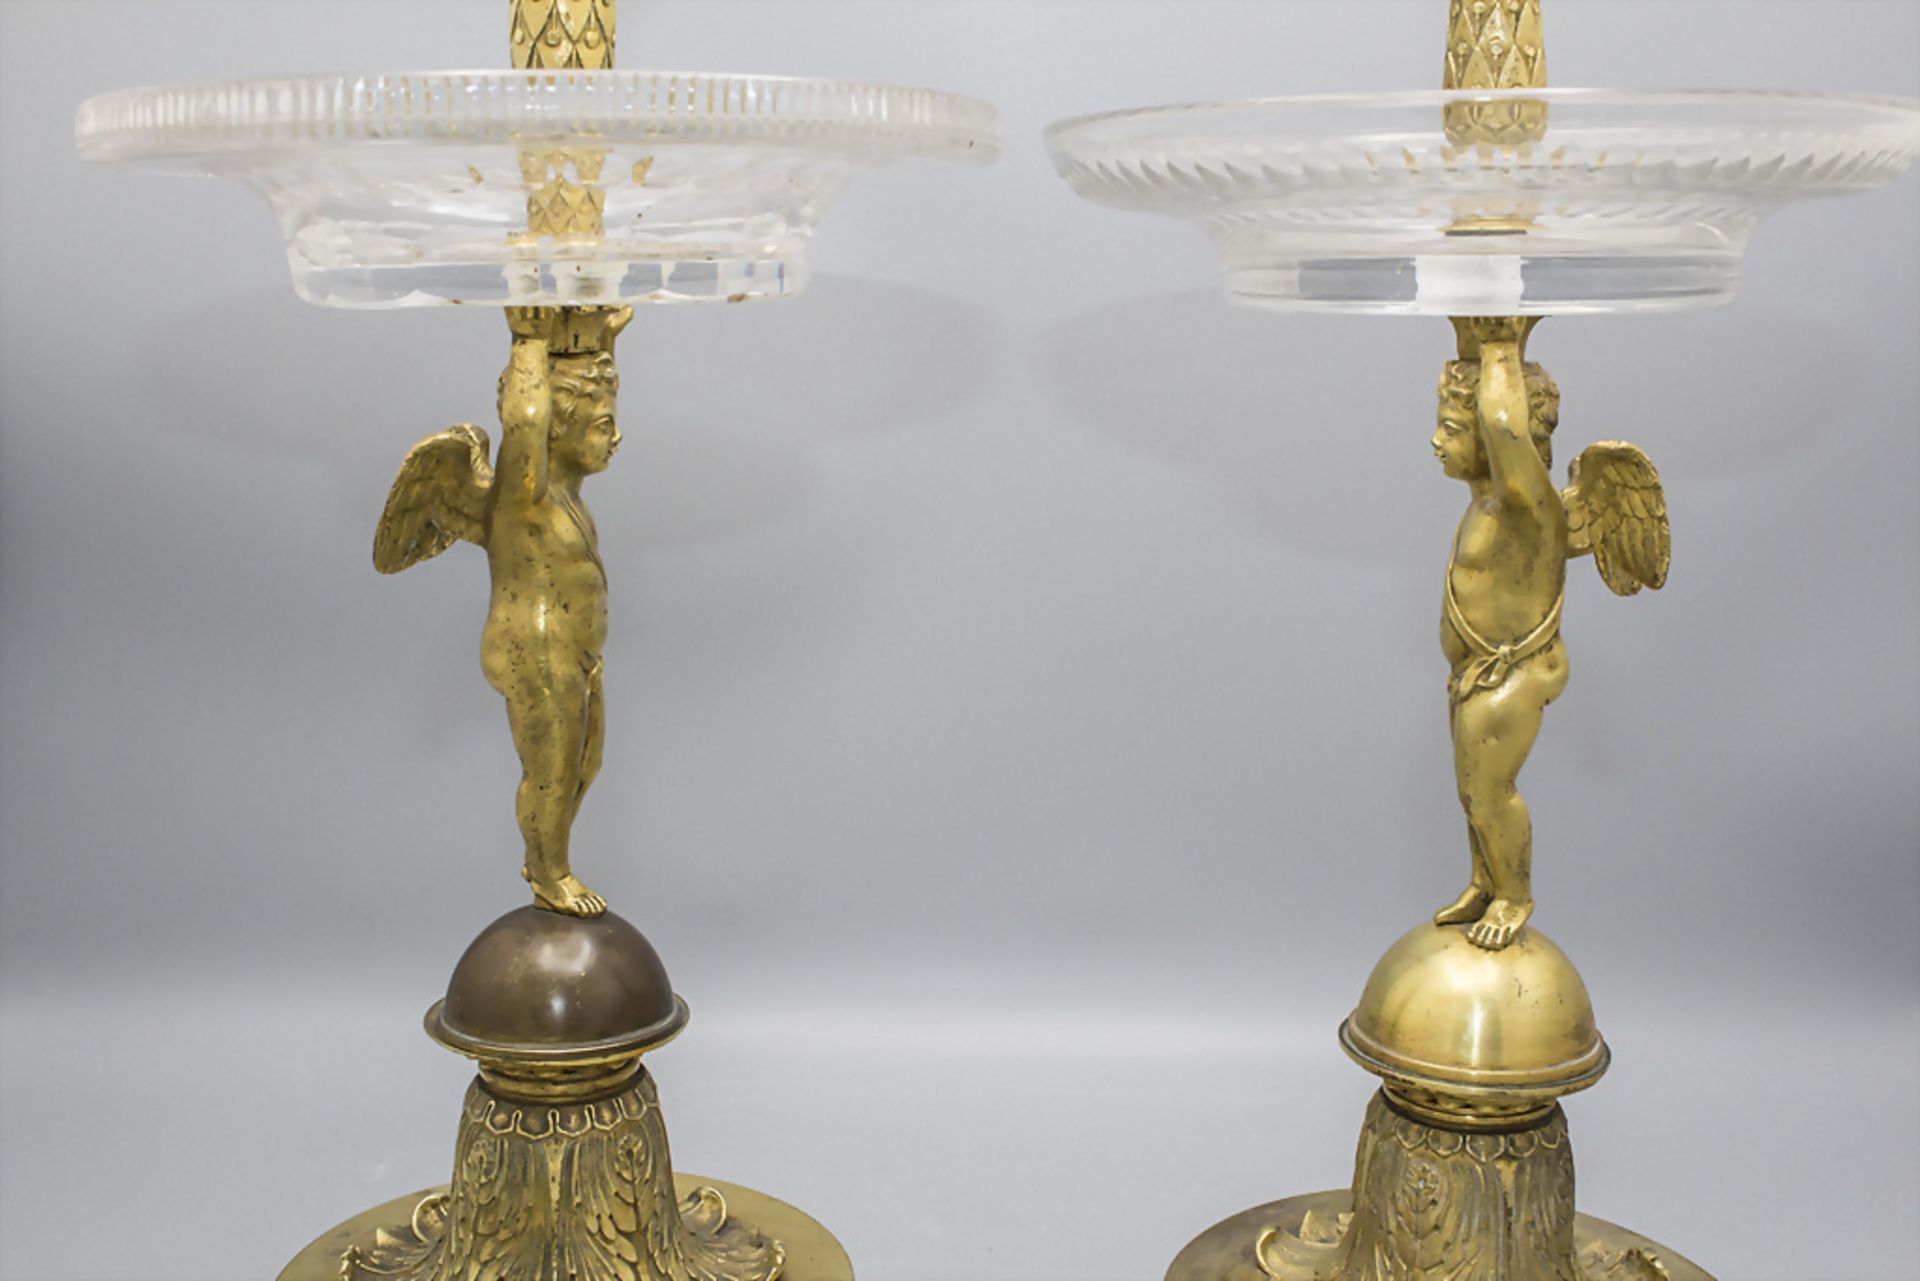 Paar Bronze Tafelaufsätze 'Amorette' / A pair of bronze centerpieces 'Armor', Paris, um 1830 - Bild 3 aus 7